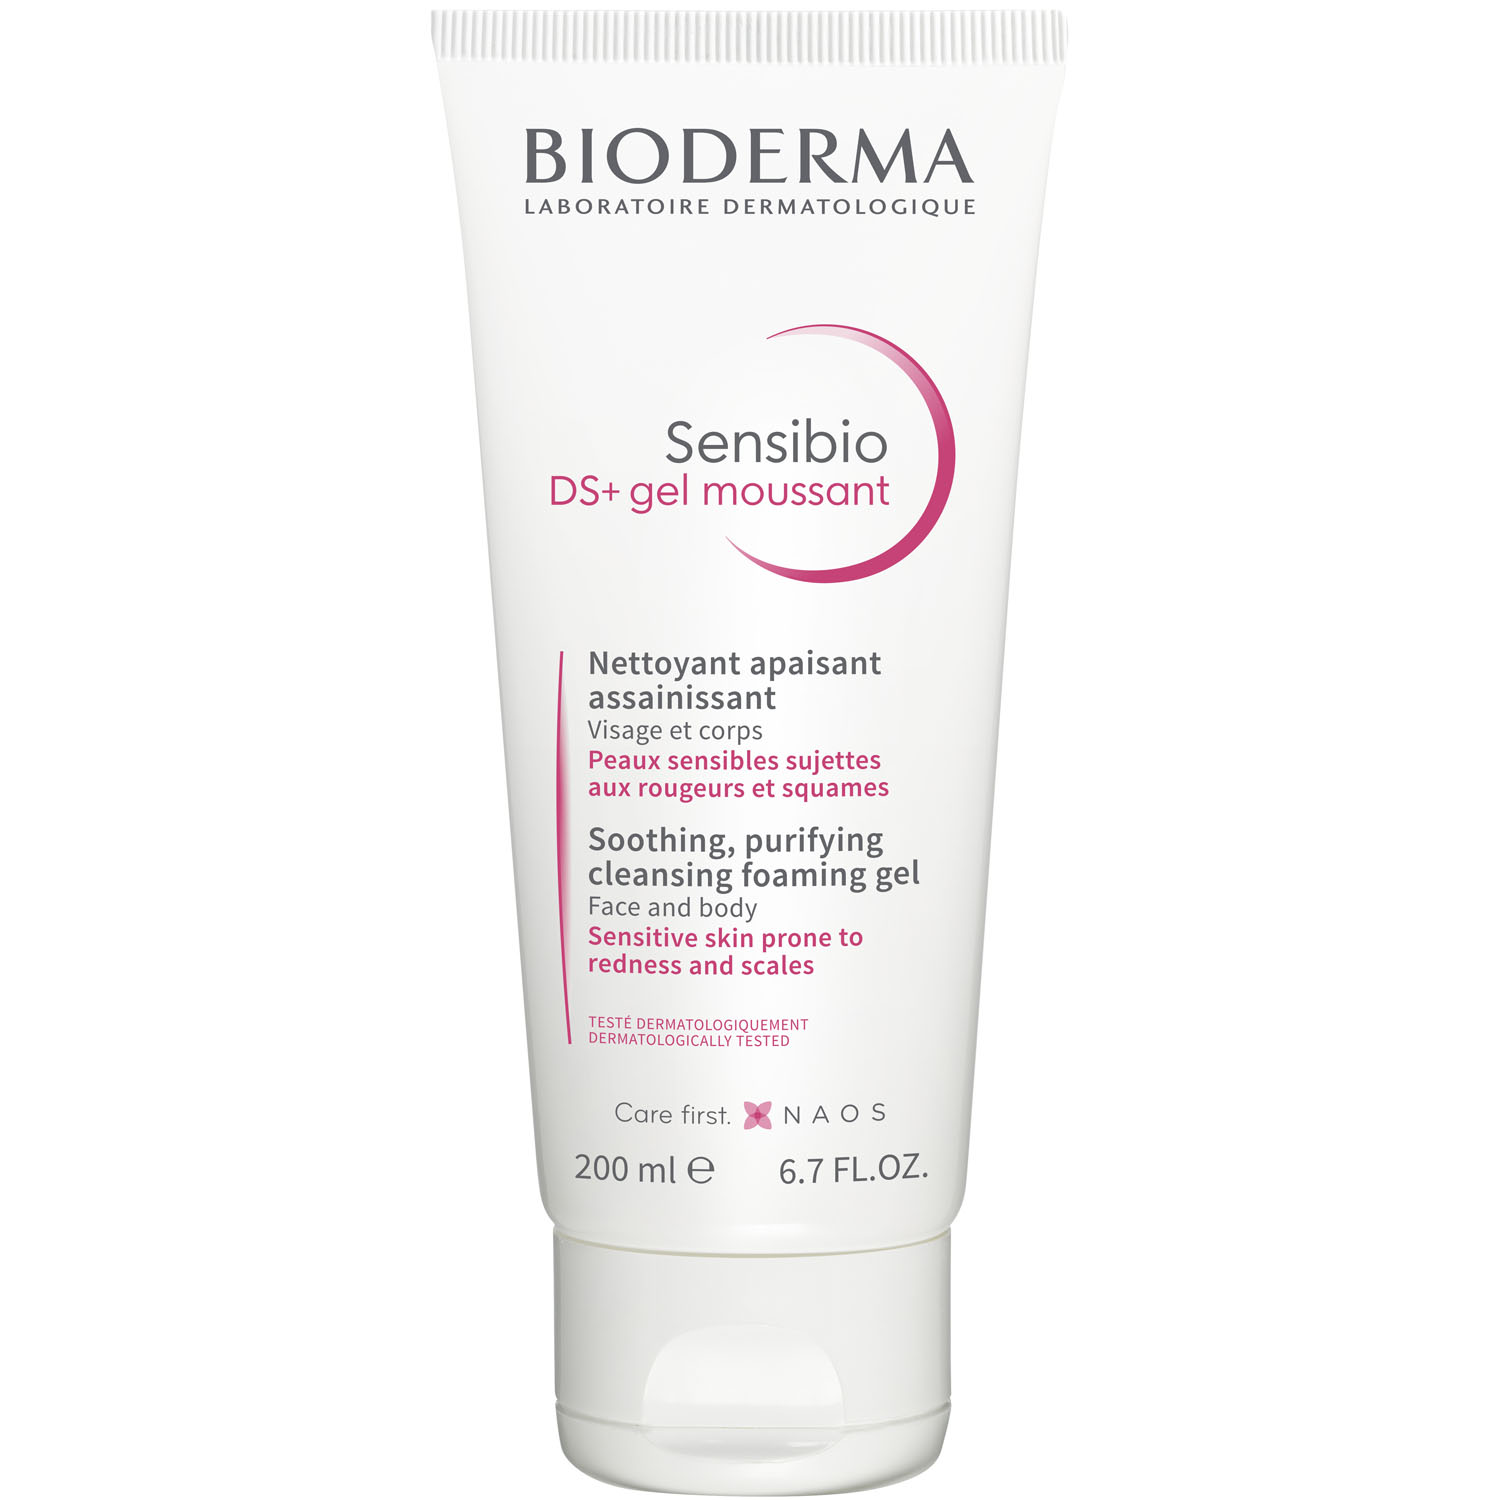 Bioderma Очищающий гель для кожи с покраснениями и шелушениями DS+, 200 мл (Bioderma, Sensibio) очищающий гель bioderma sensibio 500 мл